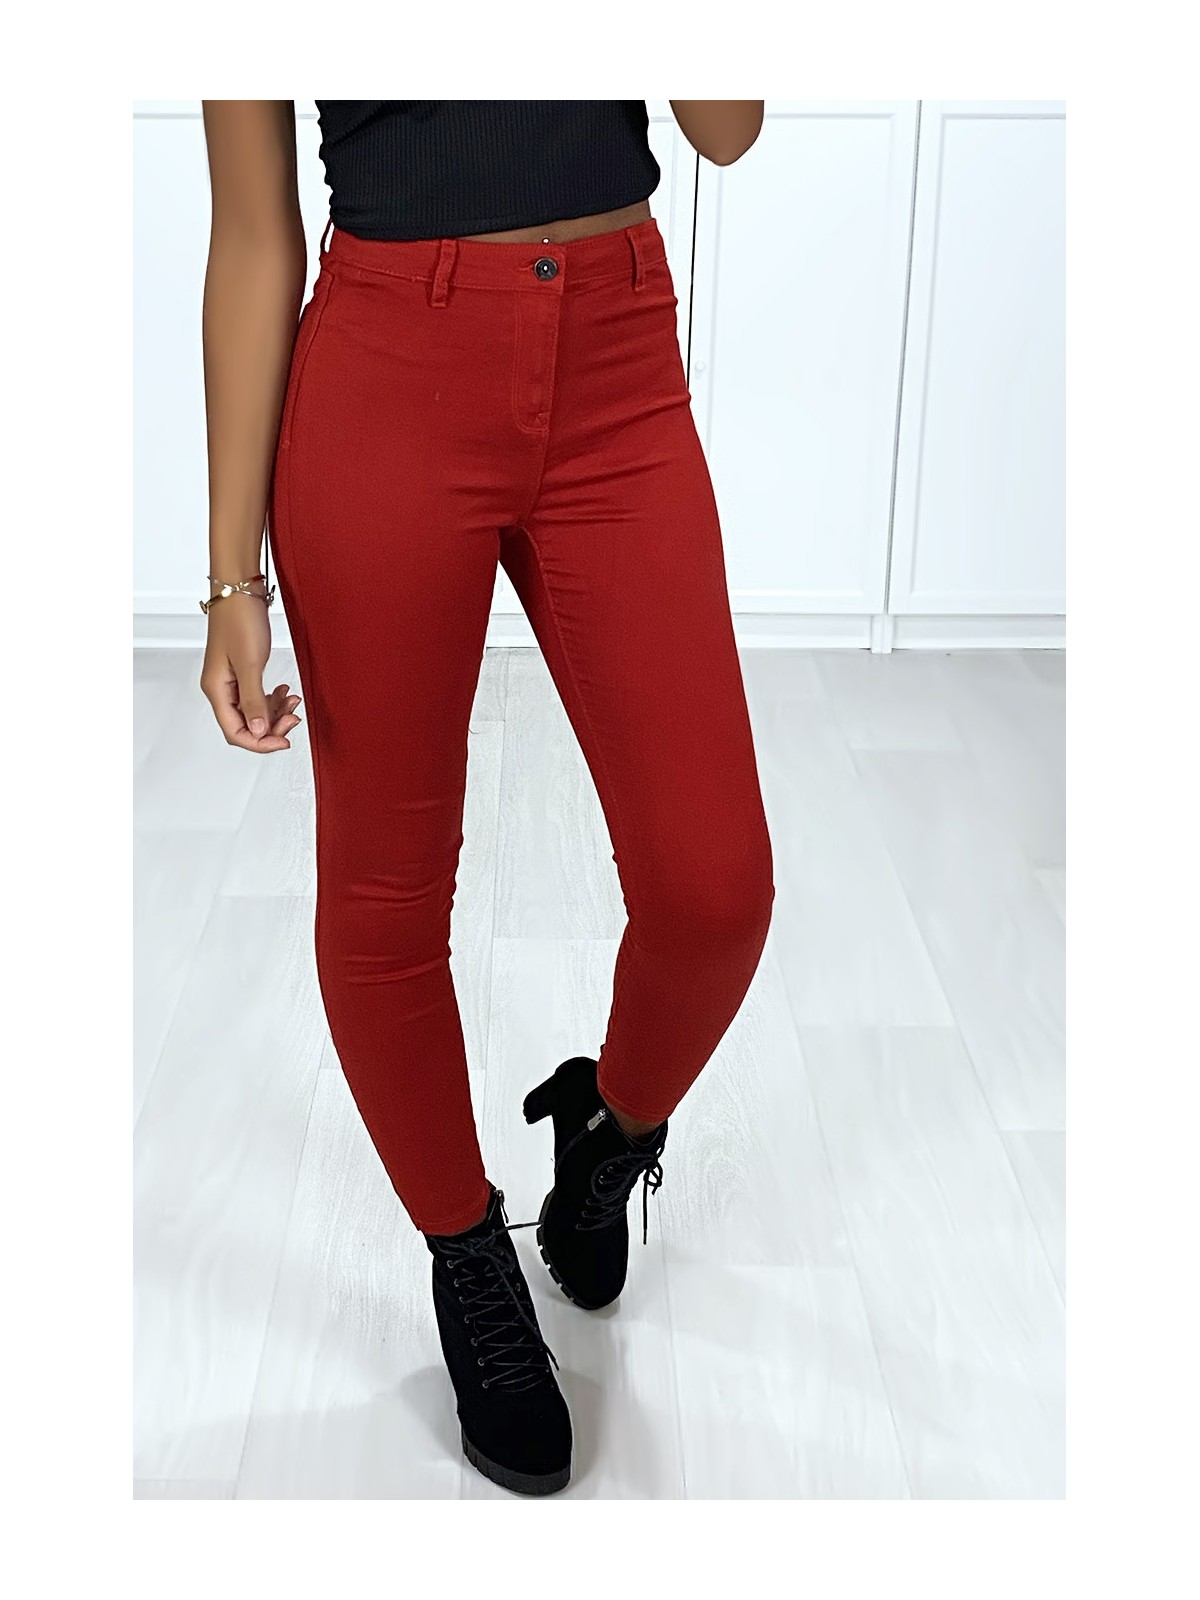 Jeans slim rouge très extensible avec poches à l'arrière - 3